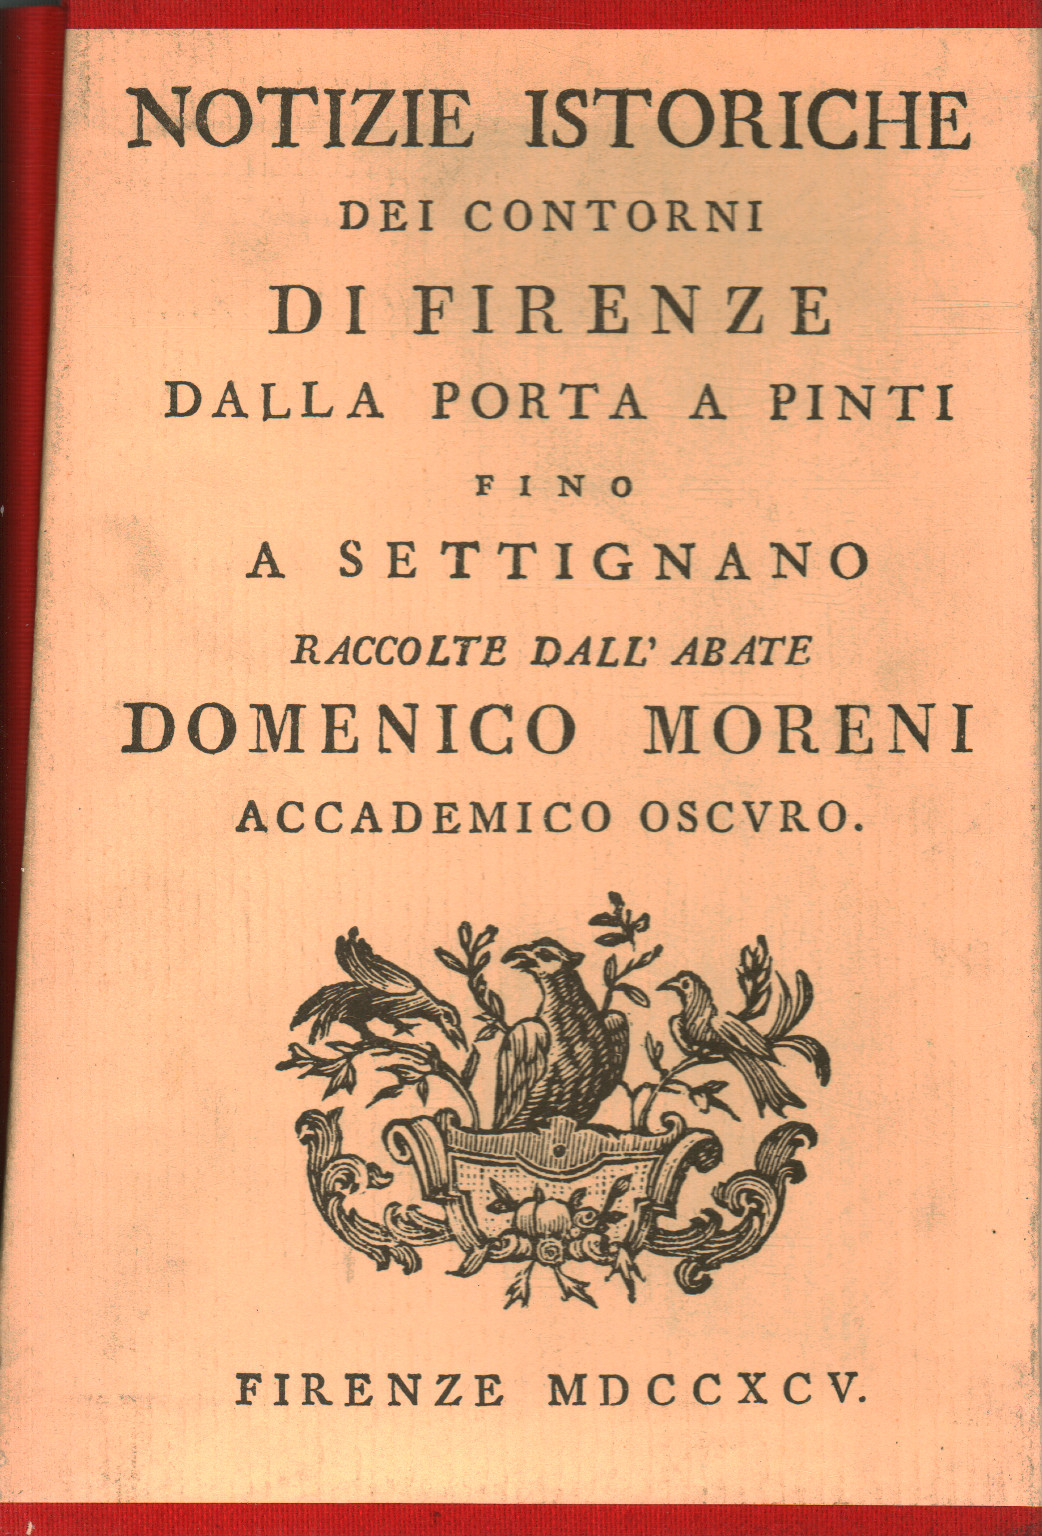 Historische Nachrichten aus der Umgebung von Florenz (6 Bände, s.a.)